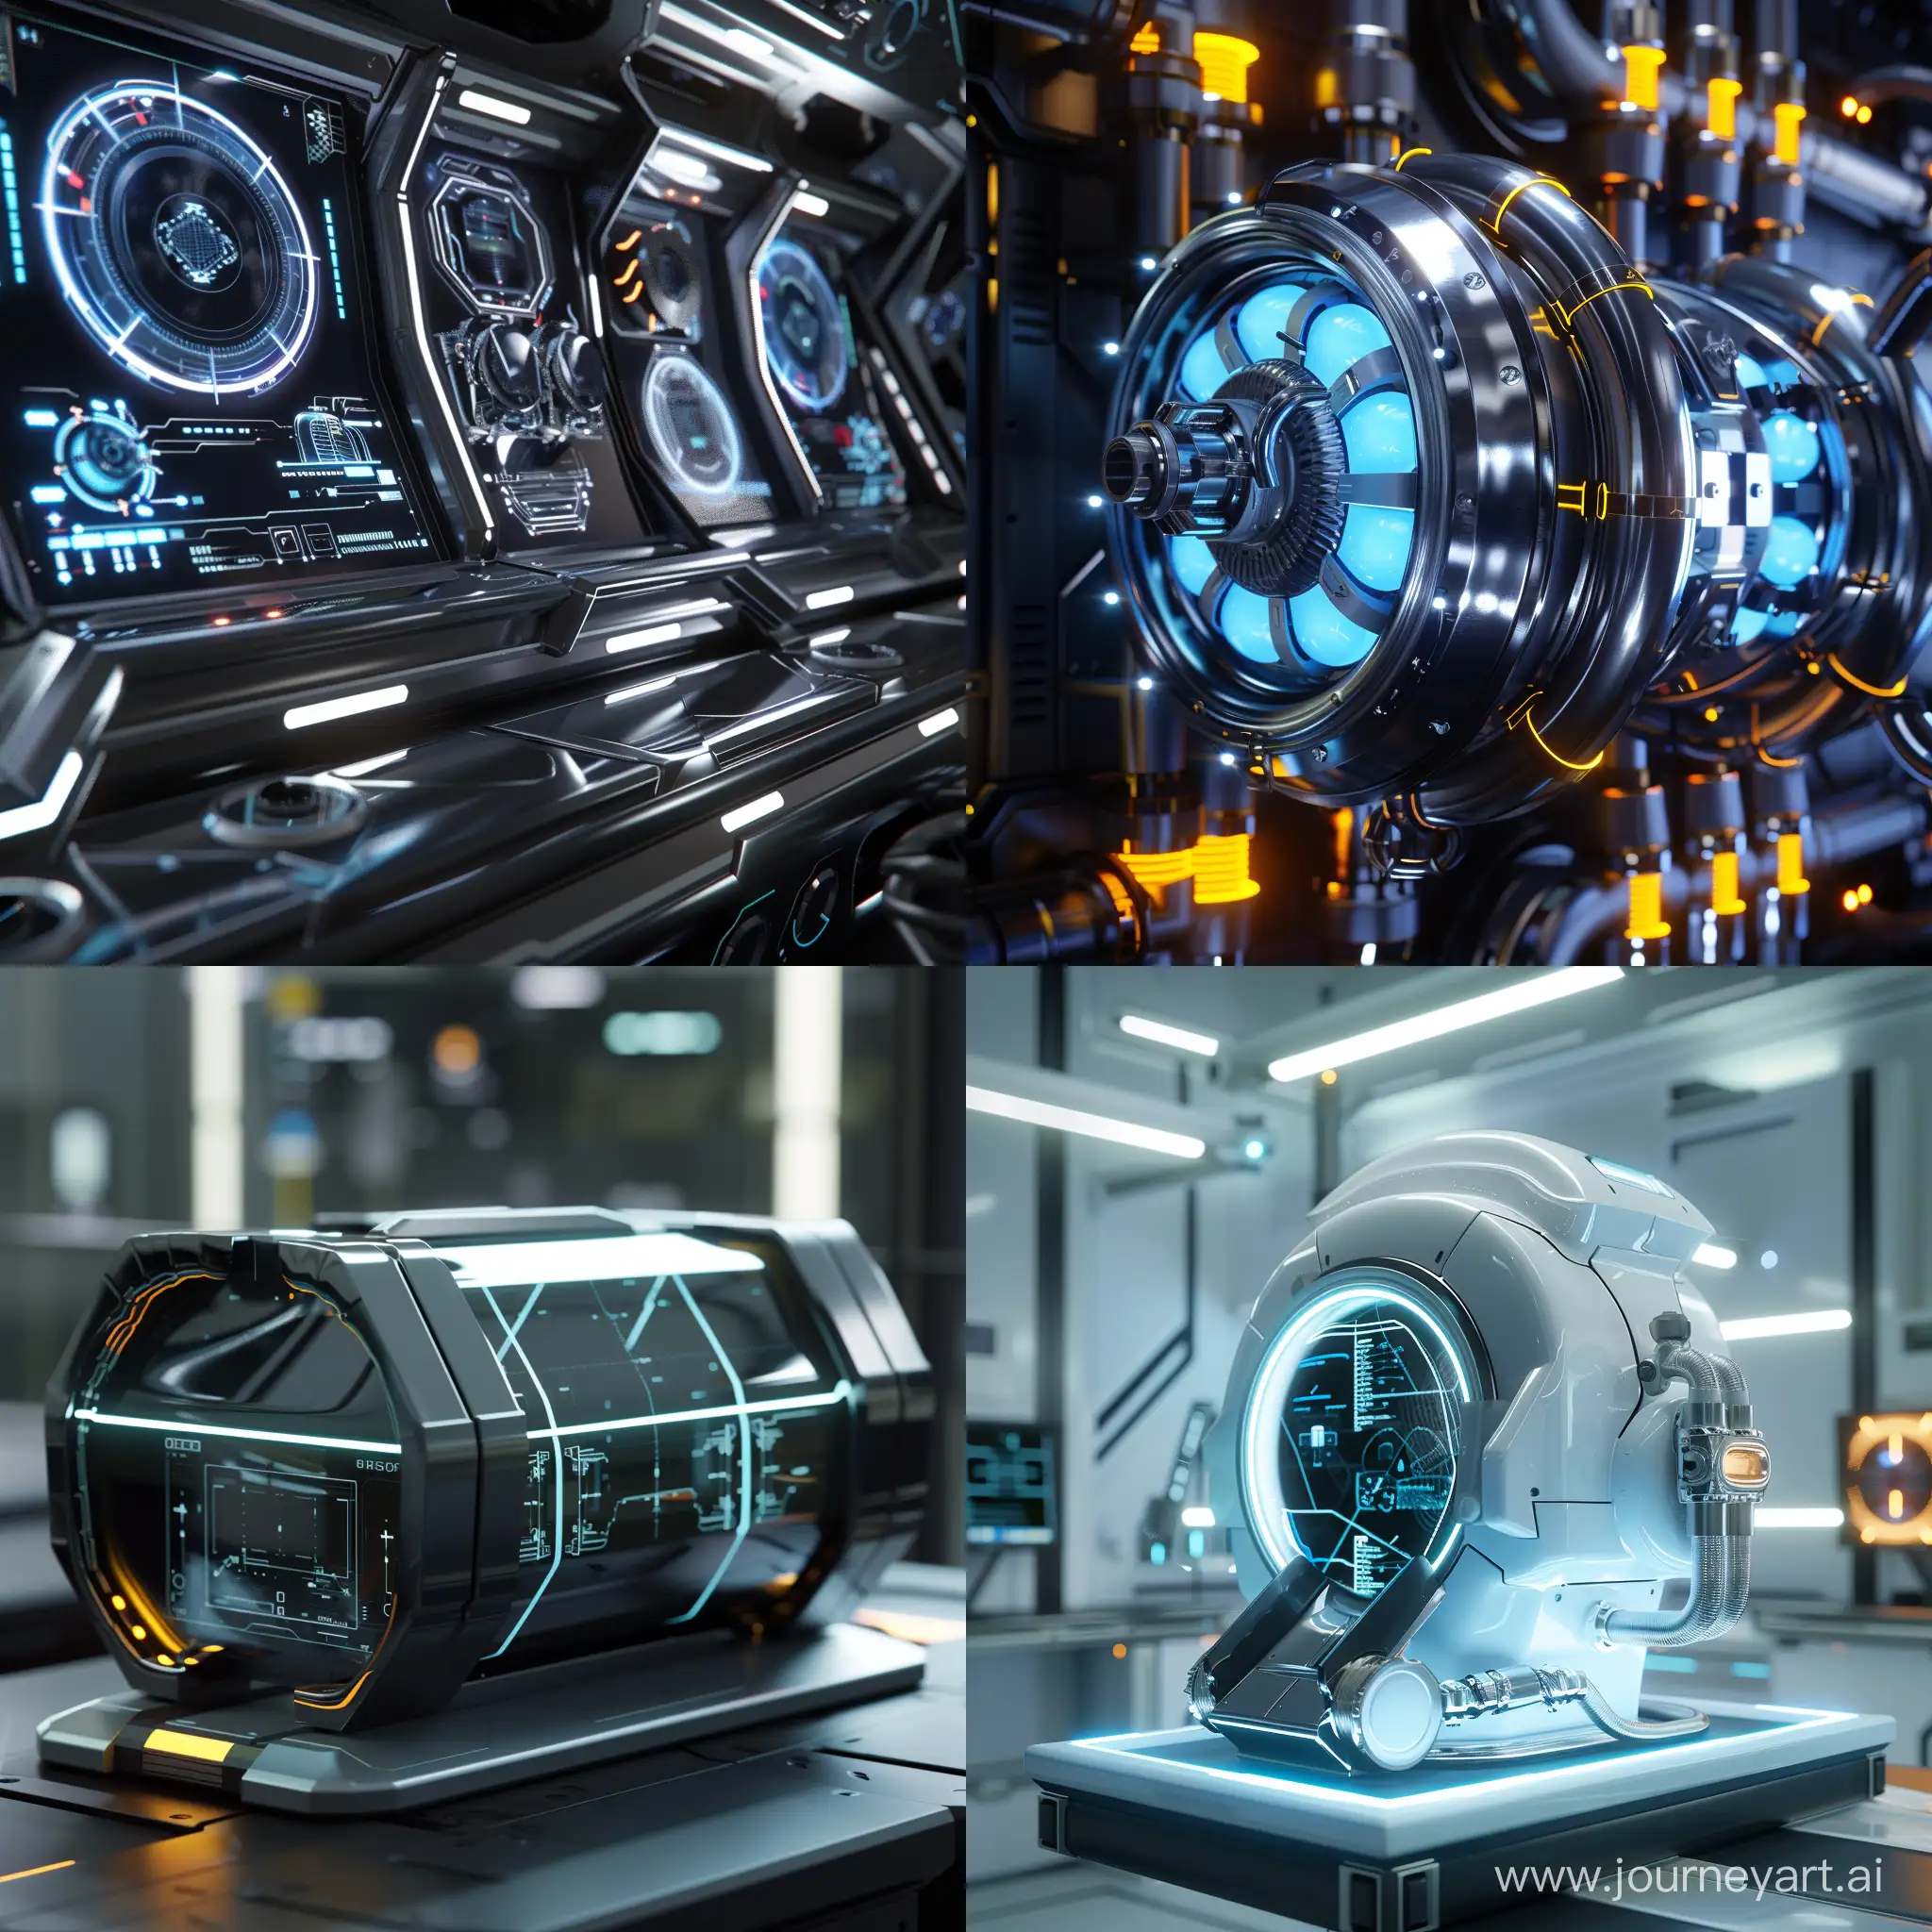 Futuristic-Valve-Steam-Deck-OLED-in-Modern-Style-Octane-Render